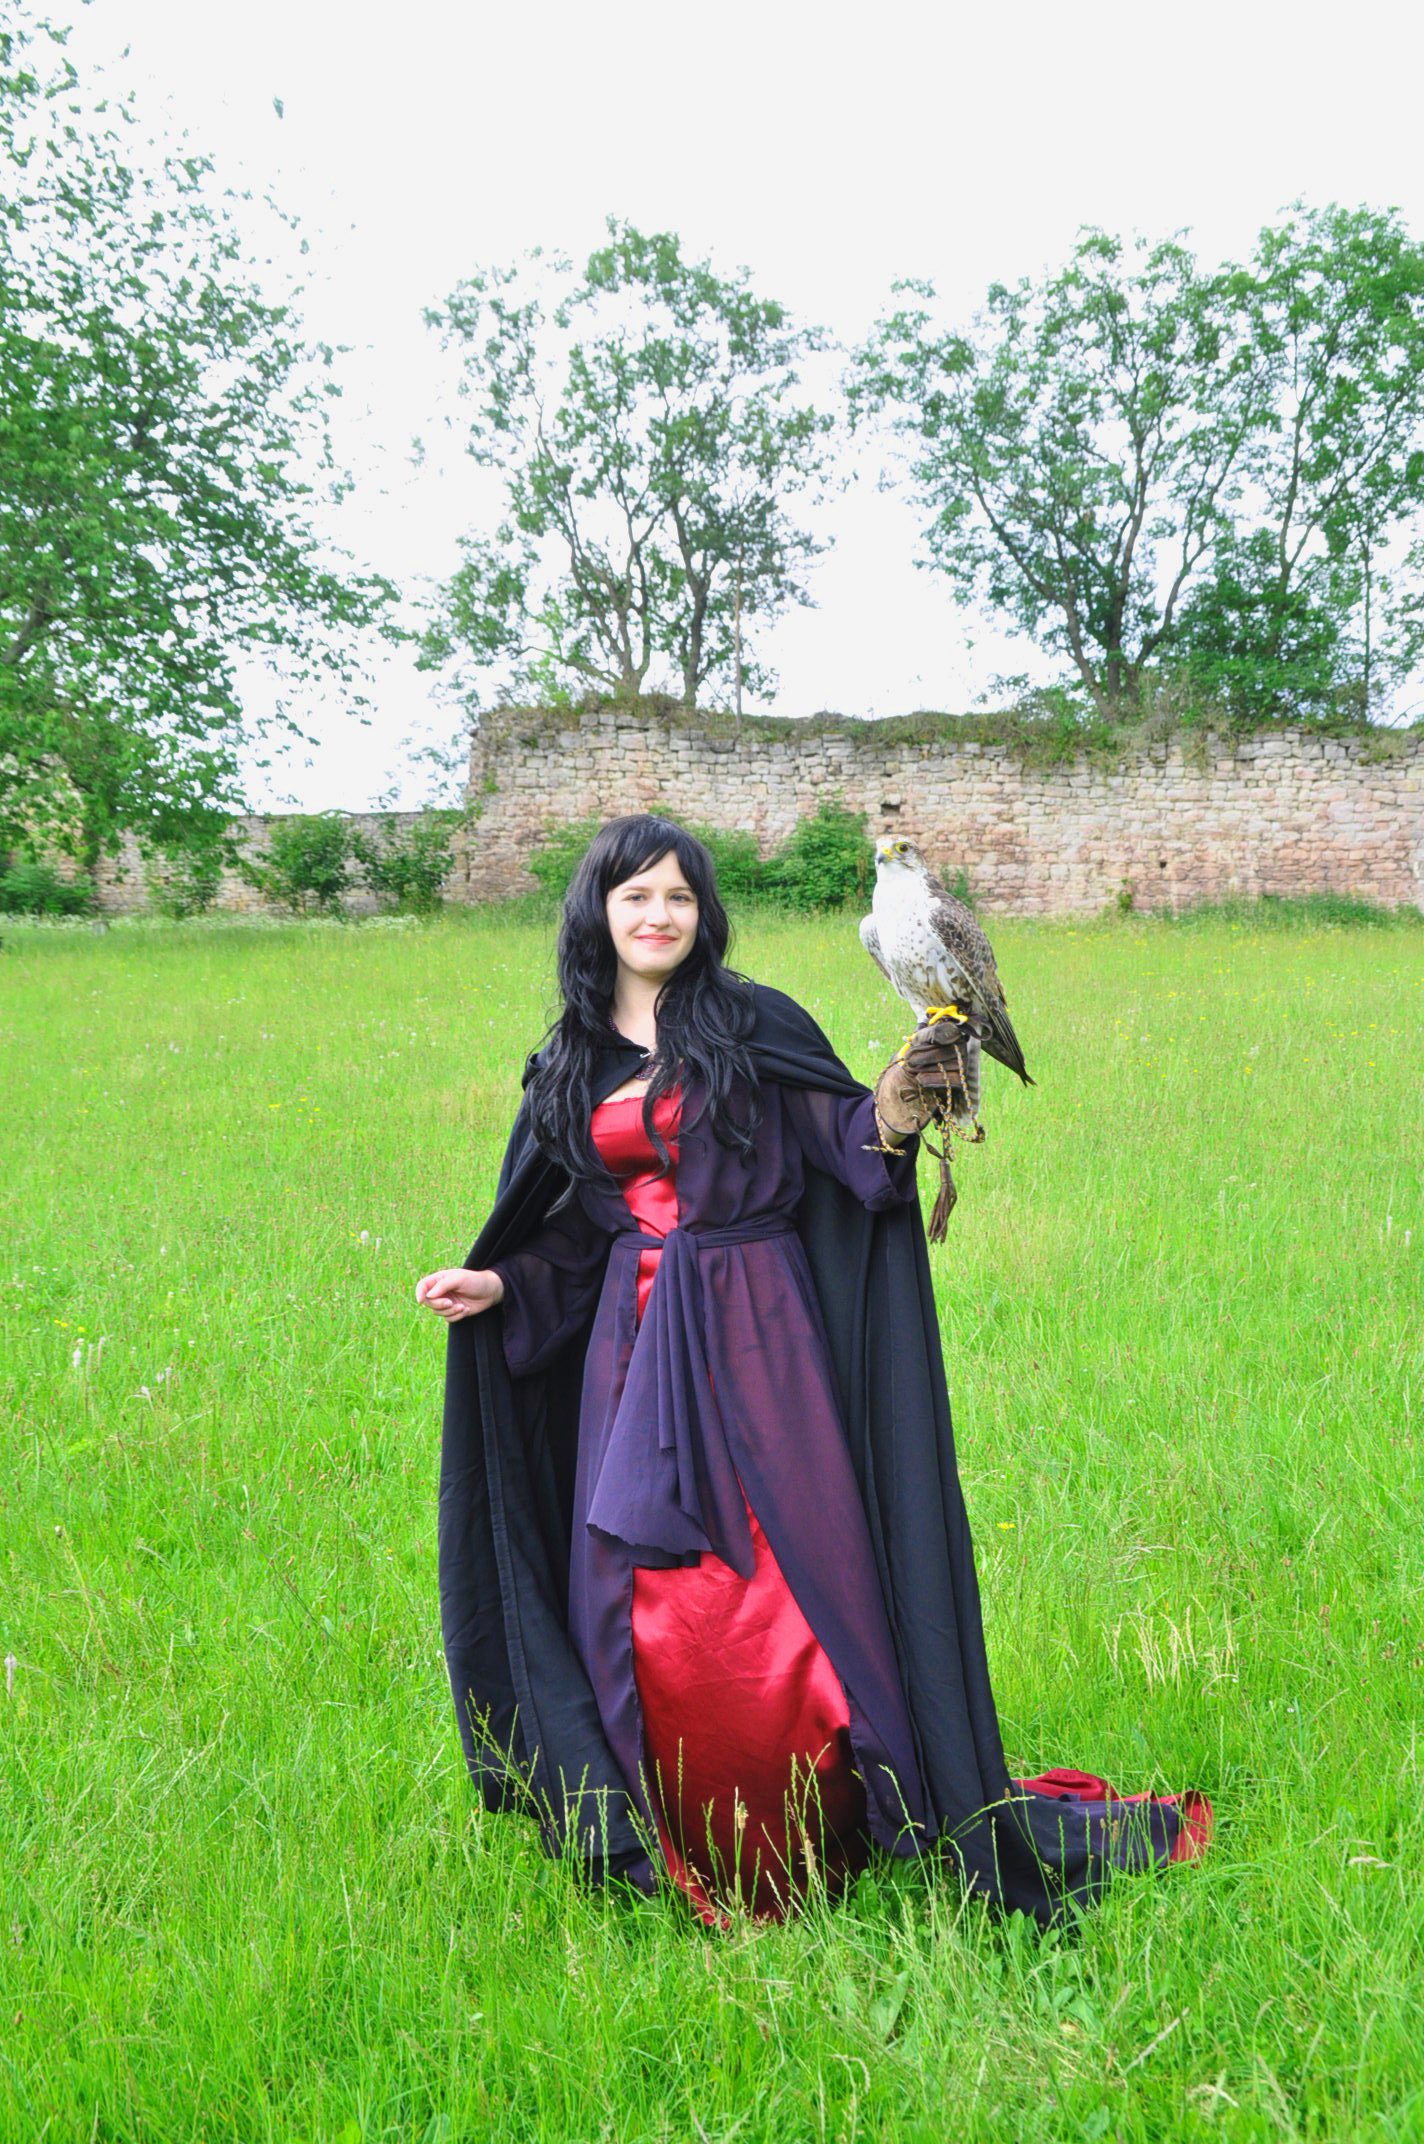 GZMID207 – Morgana – Merlin (BBC)